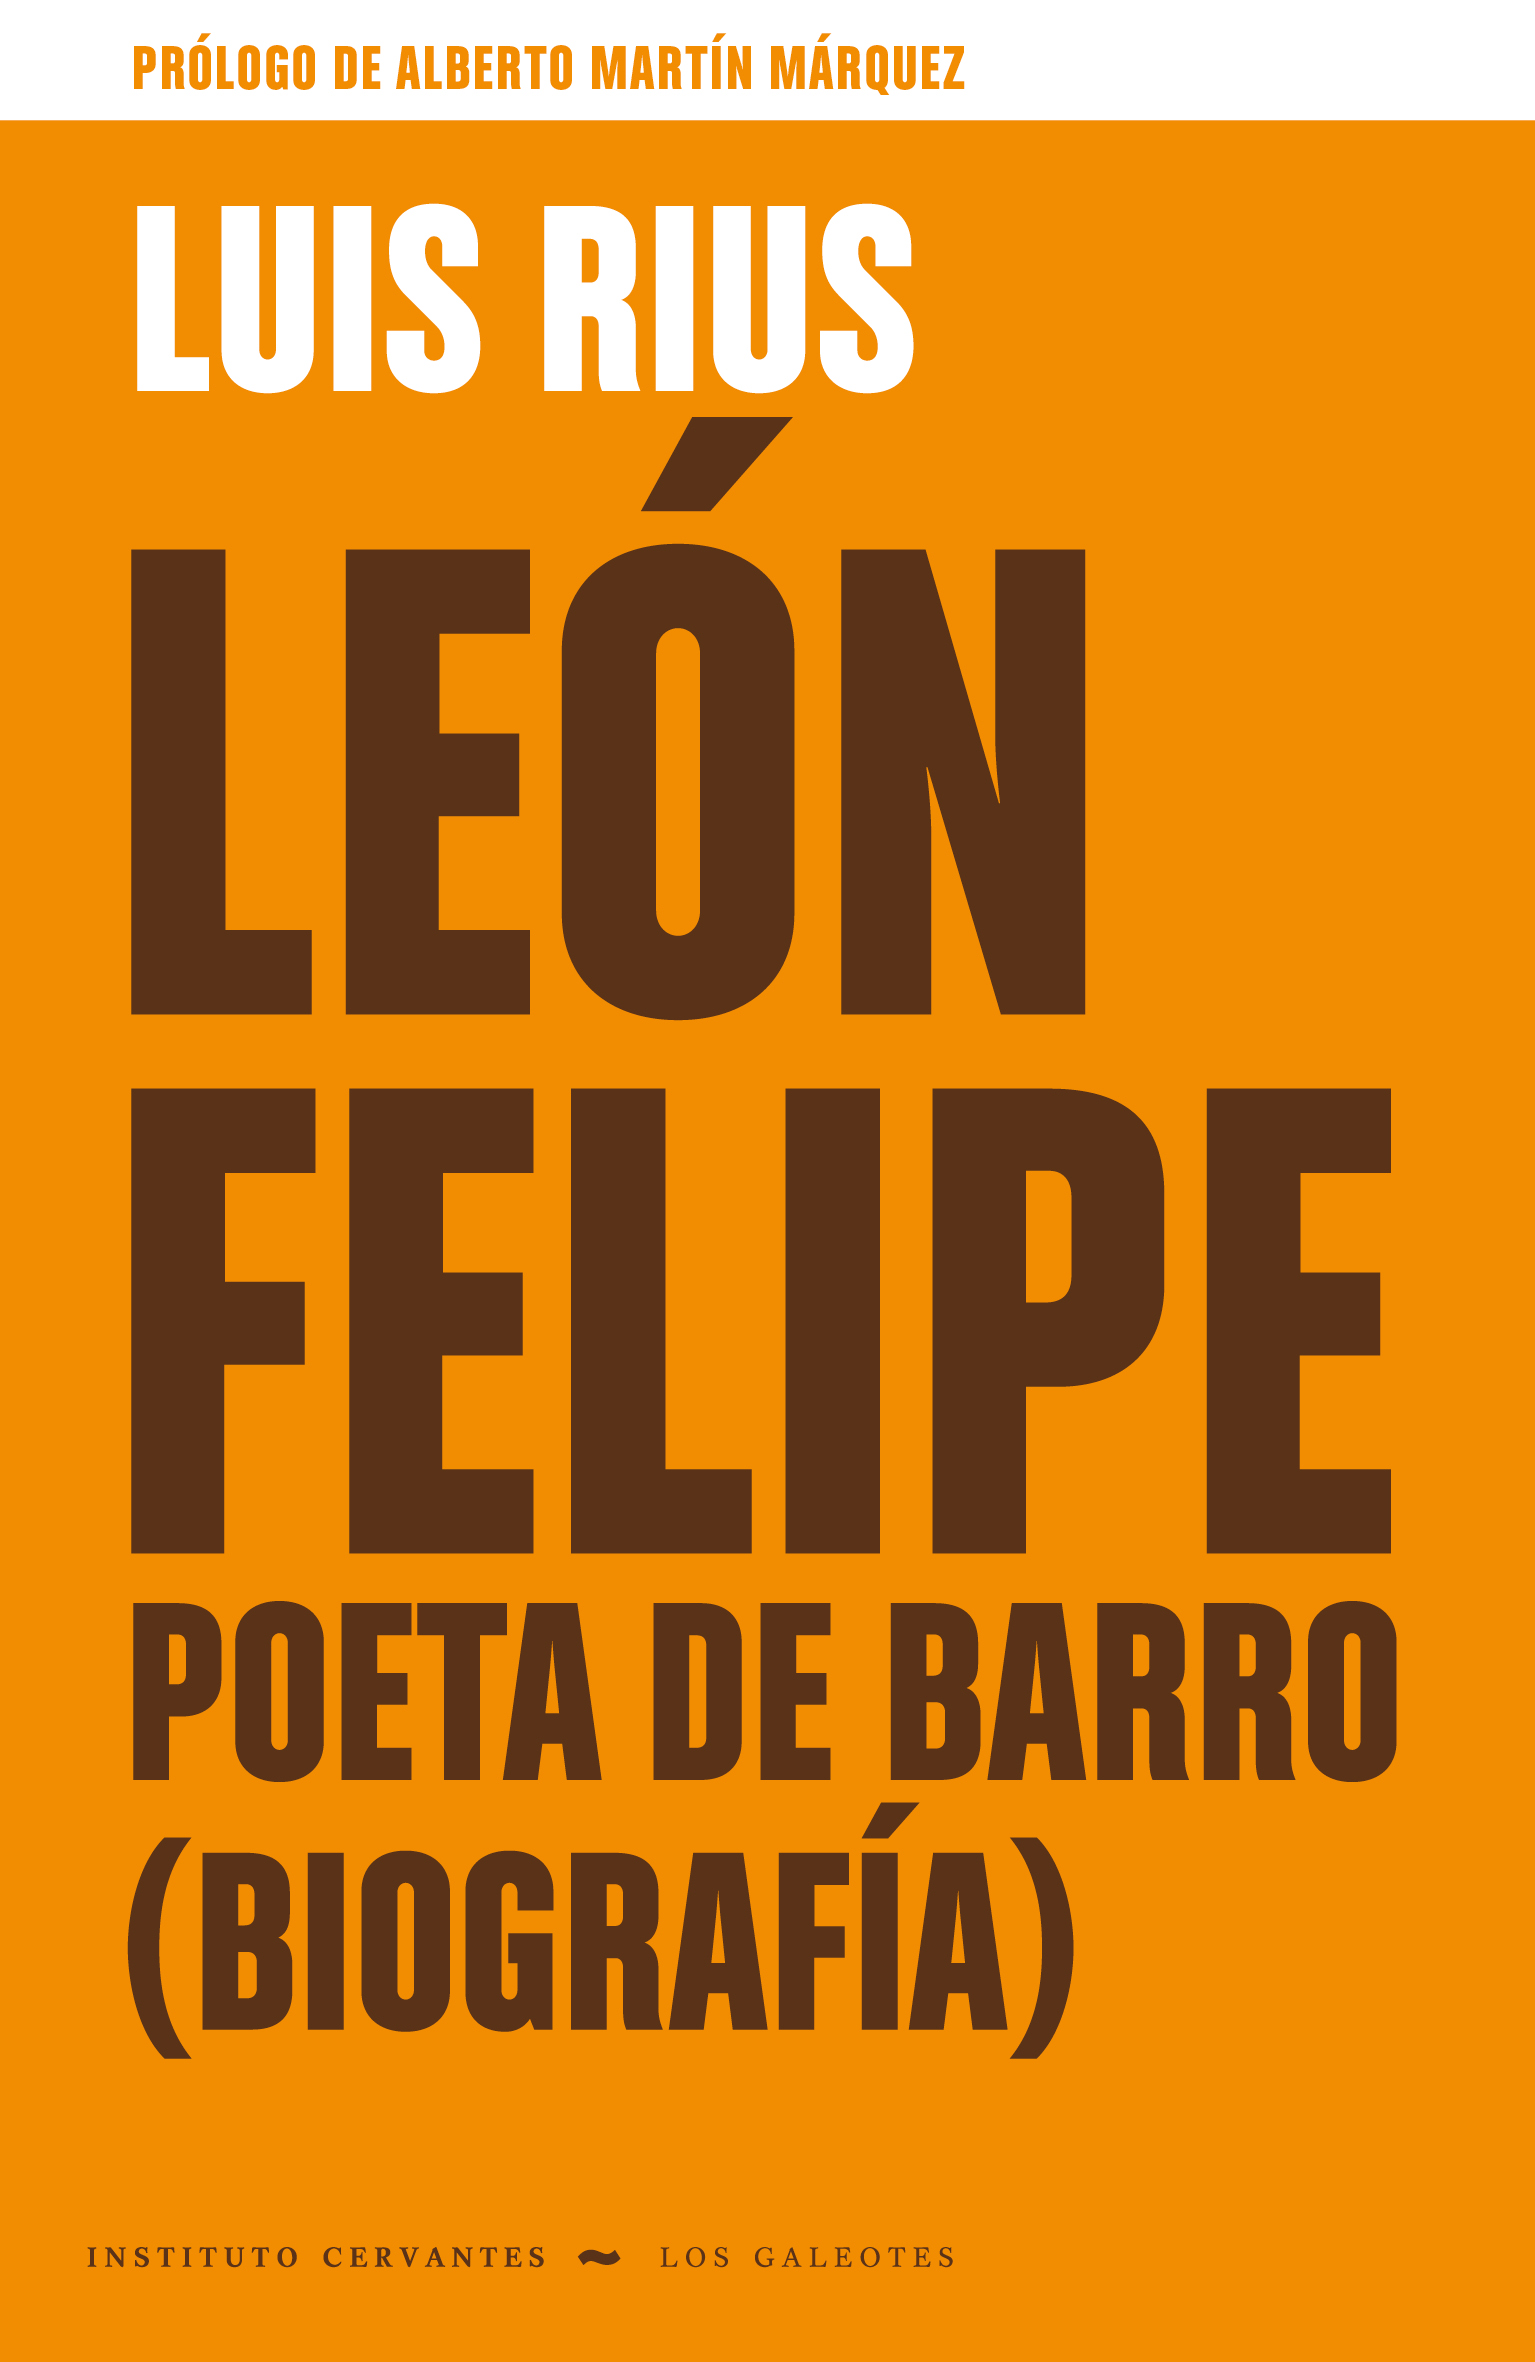 León Felipe, poeta de barro (Biografía), de Luis Rius